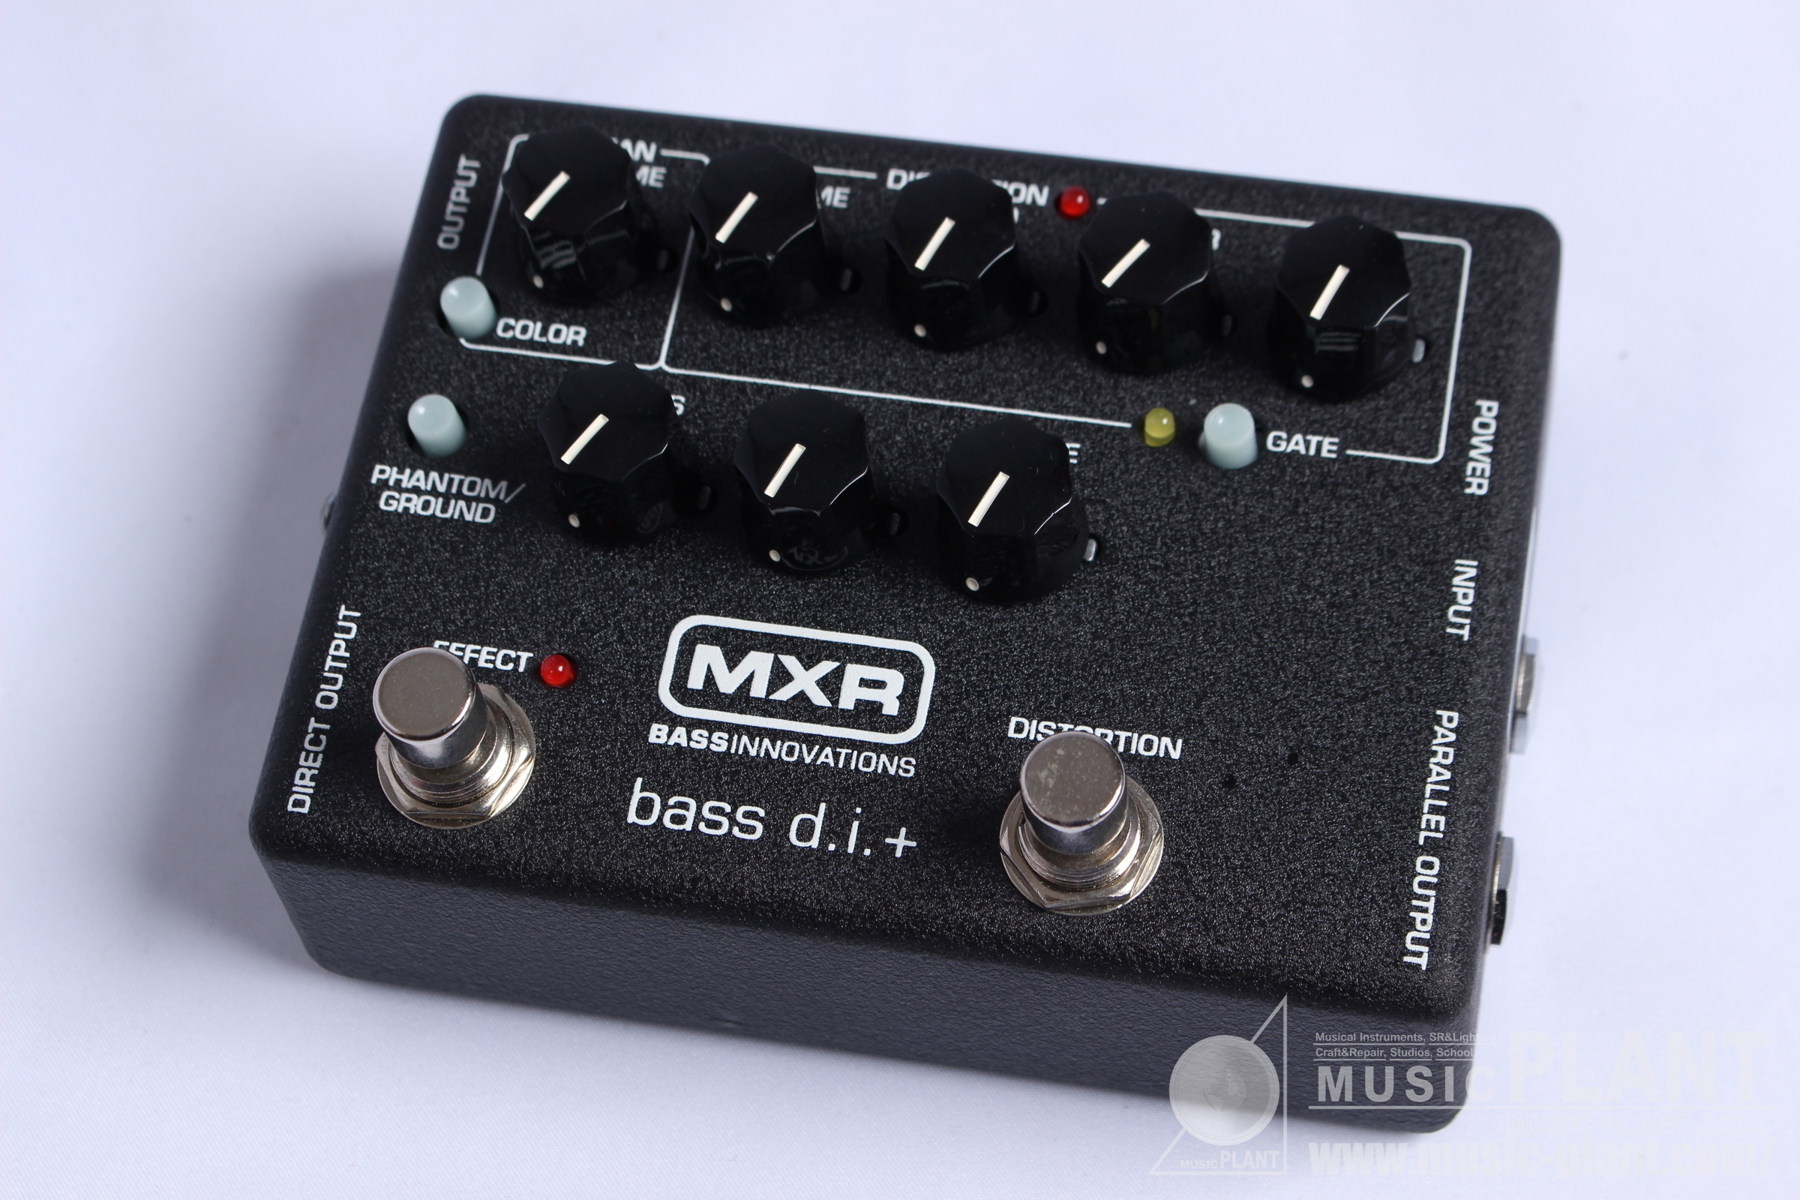 MXR 05ベースプリアンプ/DIM80 Bass D.I.+中古品()売却済みです。あしからずご了承ください。 | MUSIC PLANT